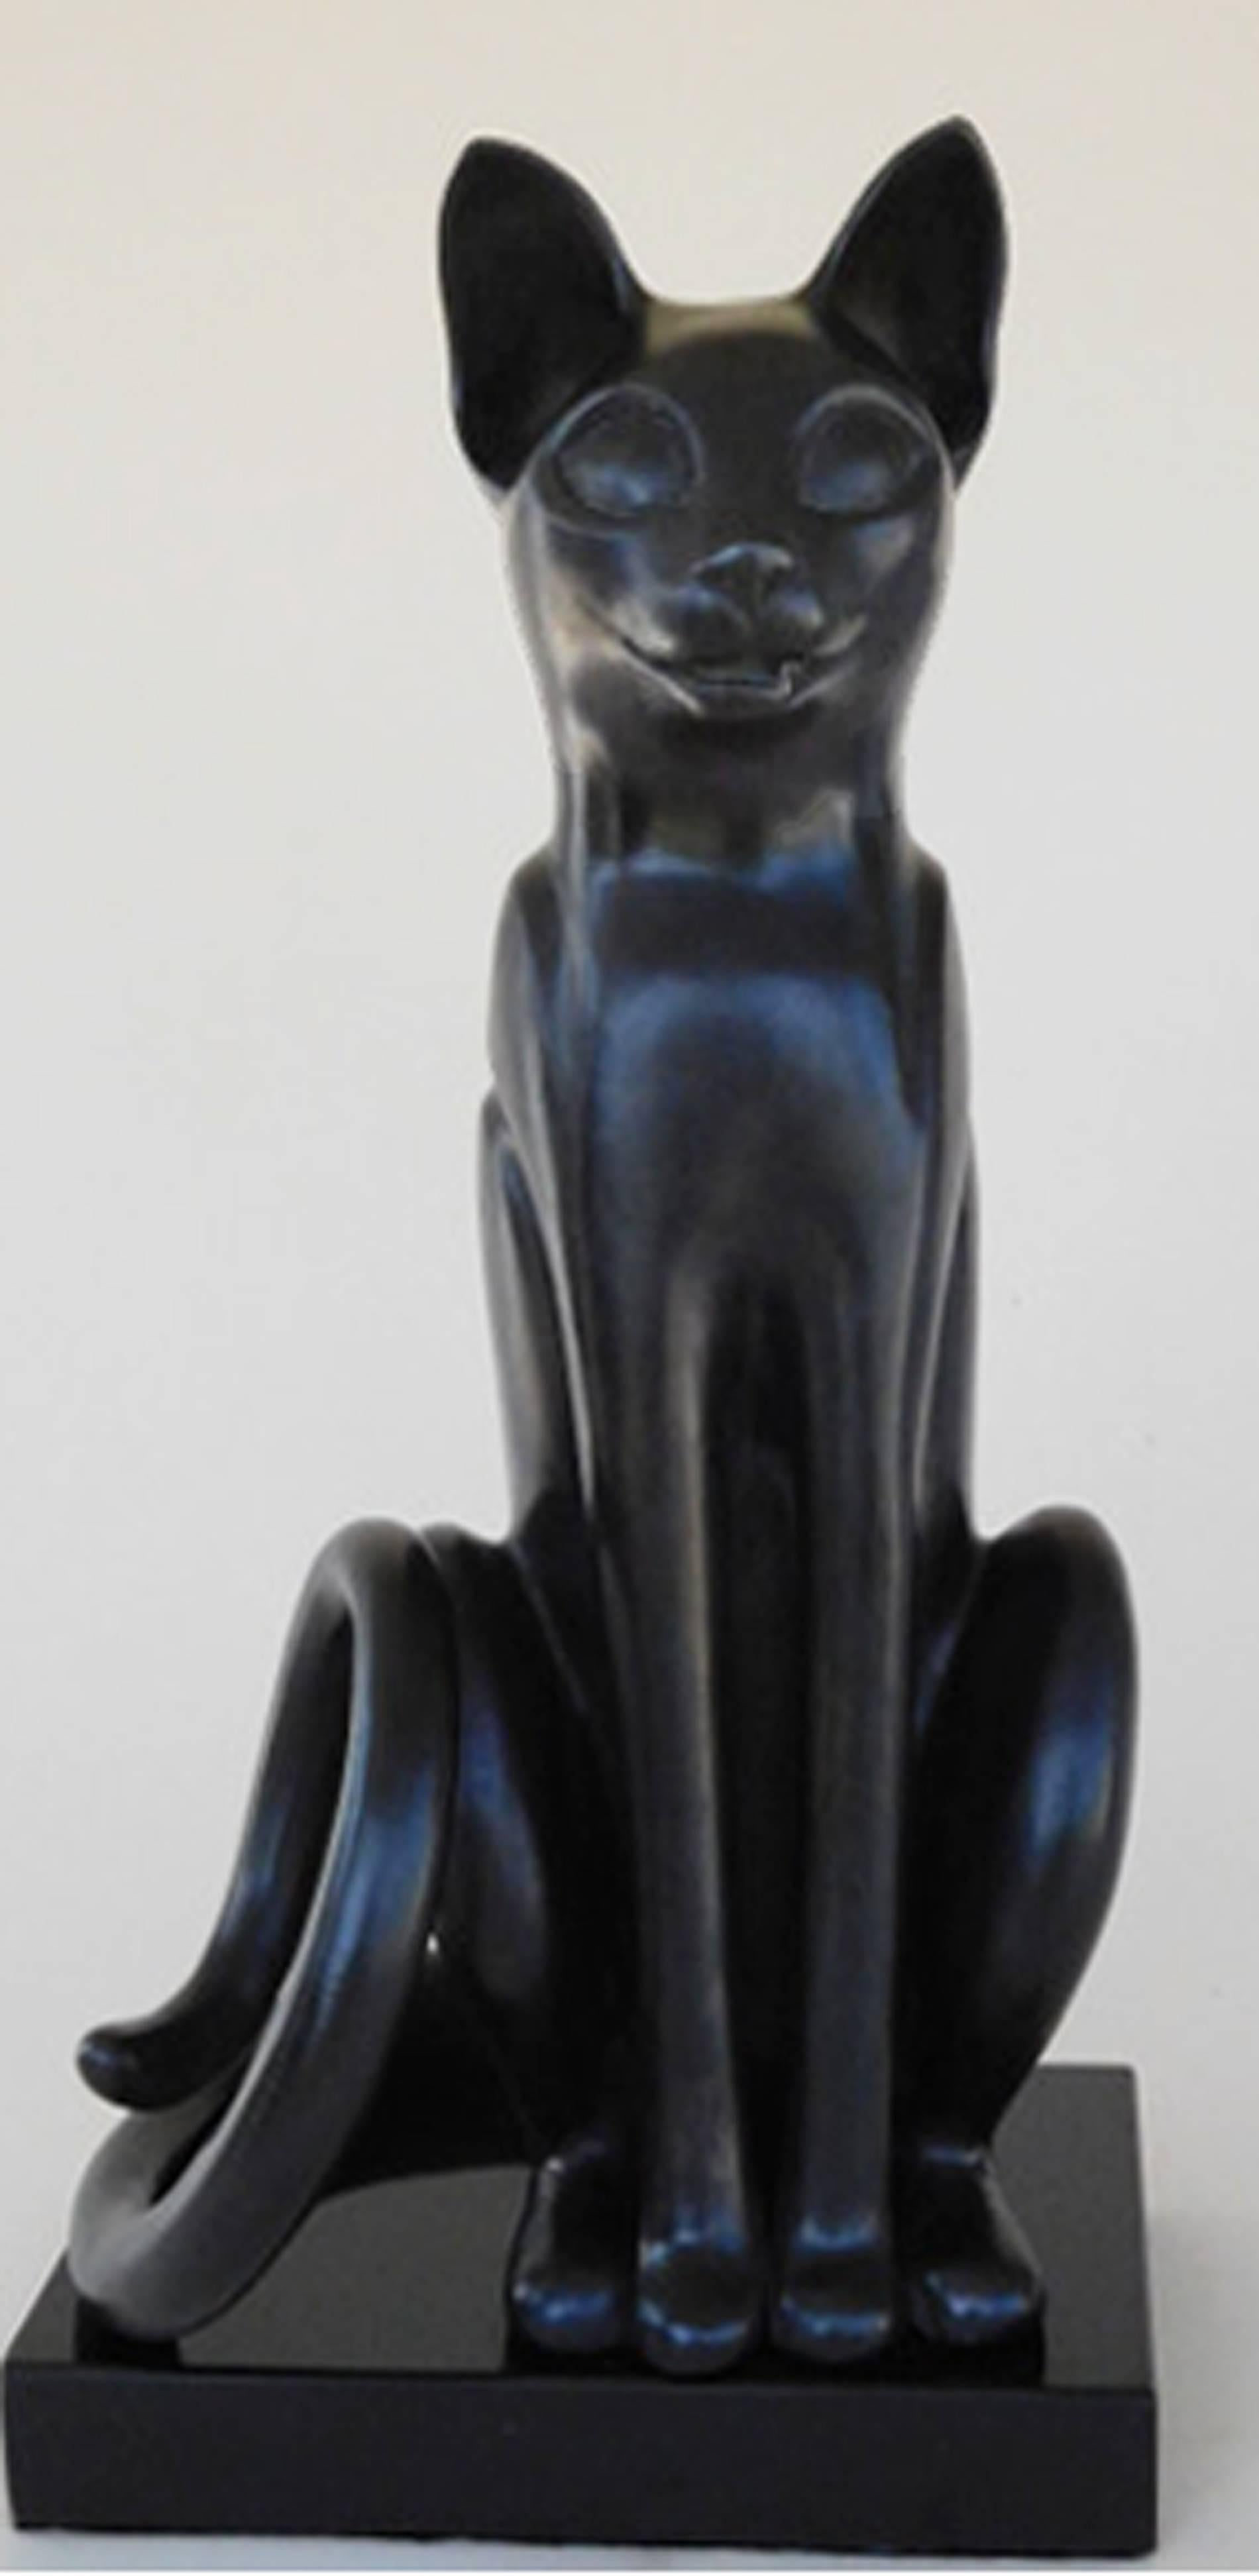 Bast (Sitzende Katze aus Bronze mit schwarzer Patina) – Sculpture von Paula Blackman